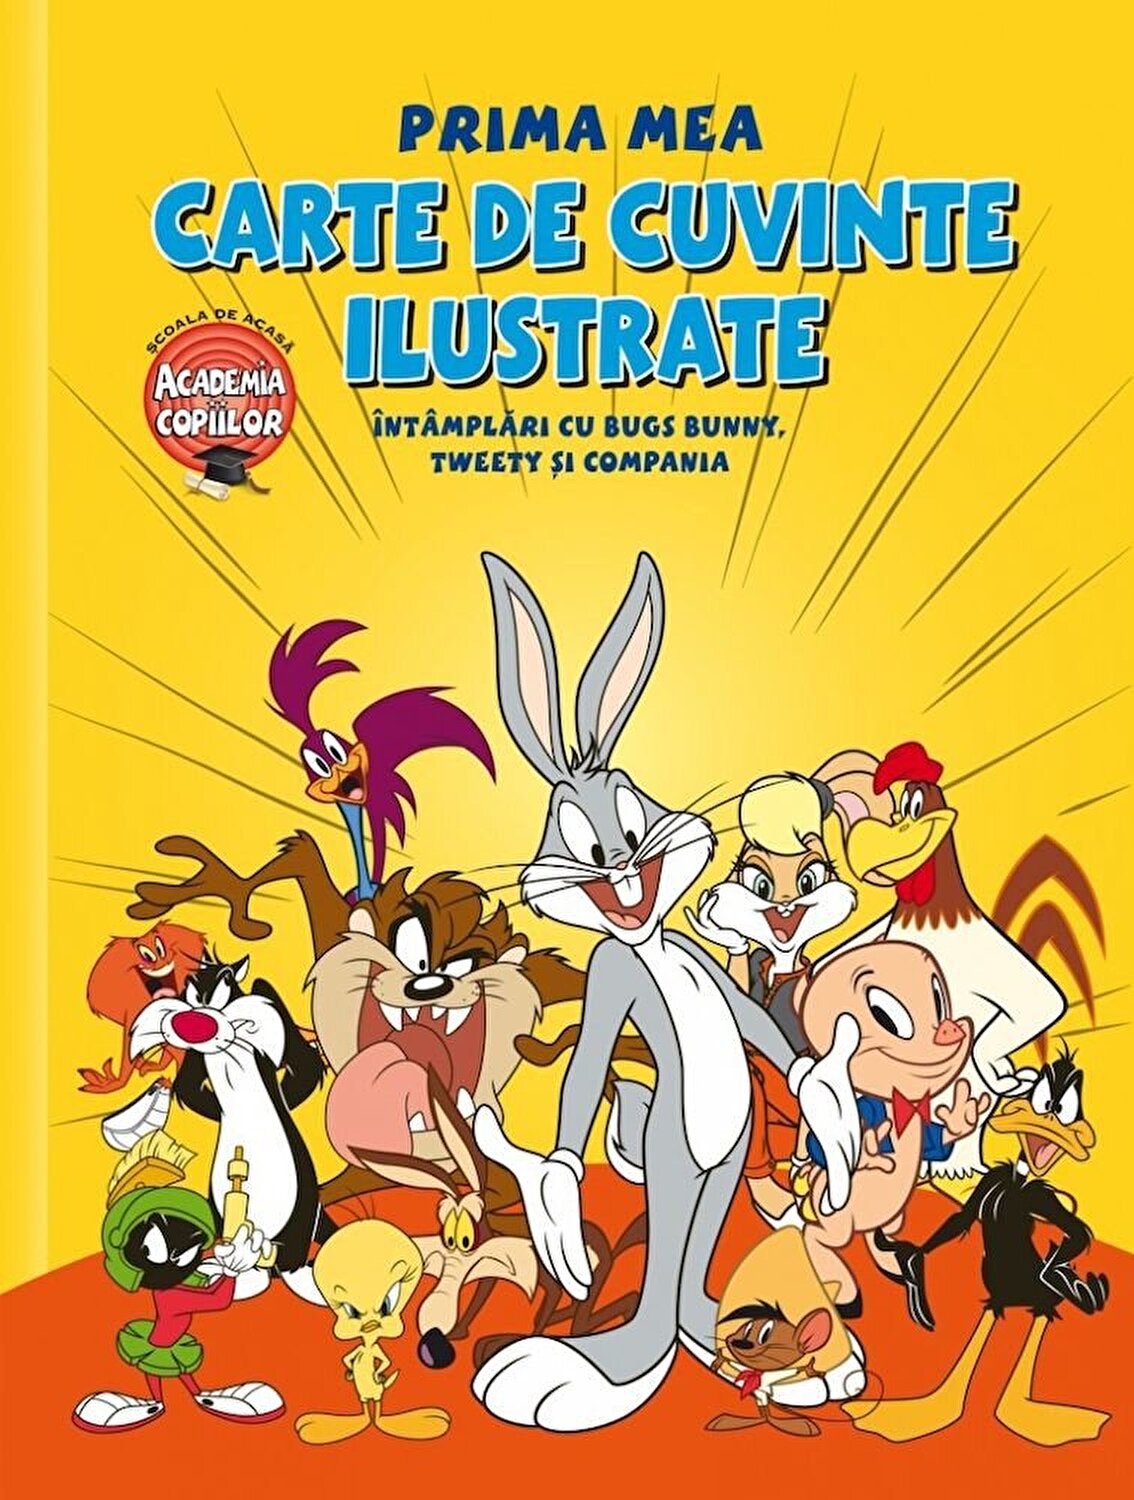 Prima mea carte de cuvinte ilustrate - Intamplari cu Bugs Bunny, Tweety si Compania